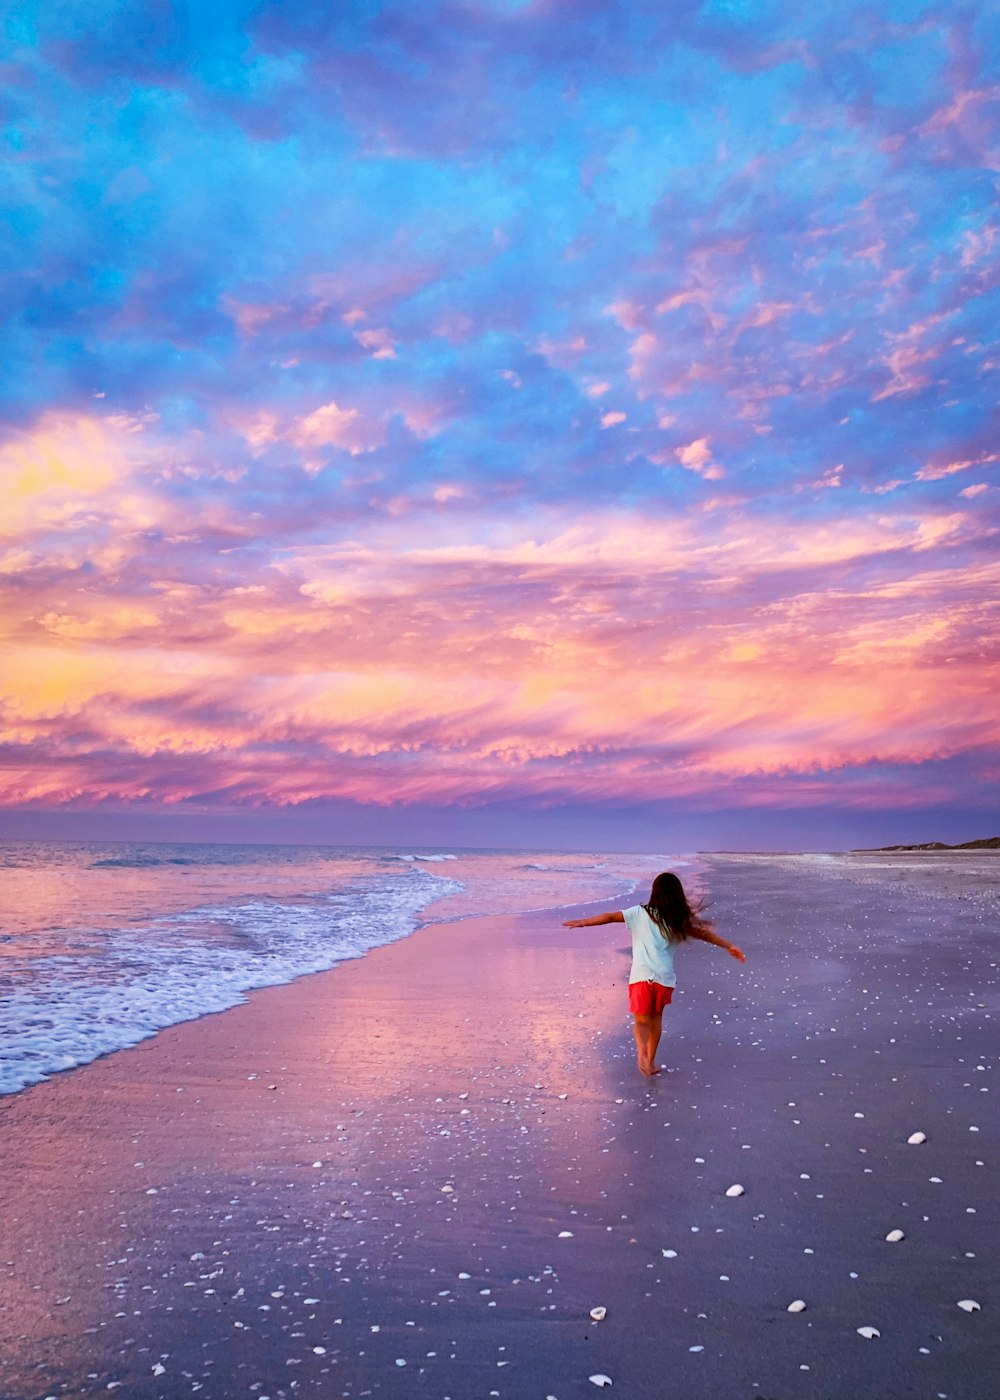 femme en robe blanche marchant sur la plage pendant le coucher du soleil